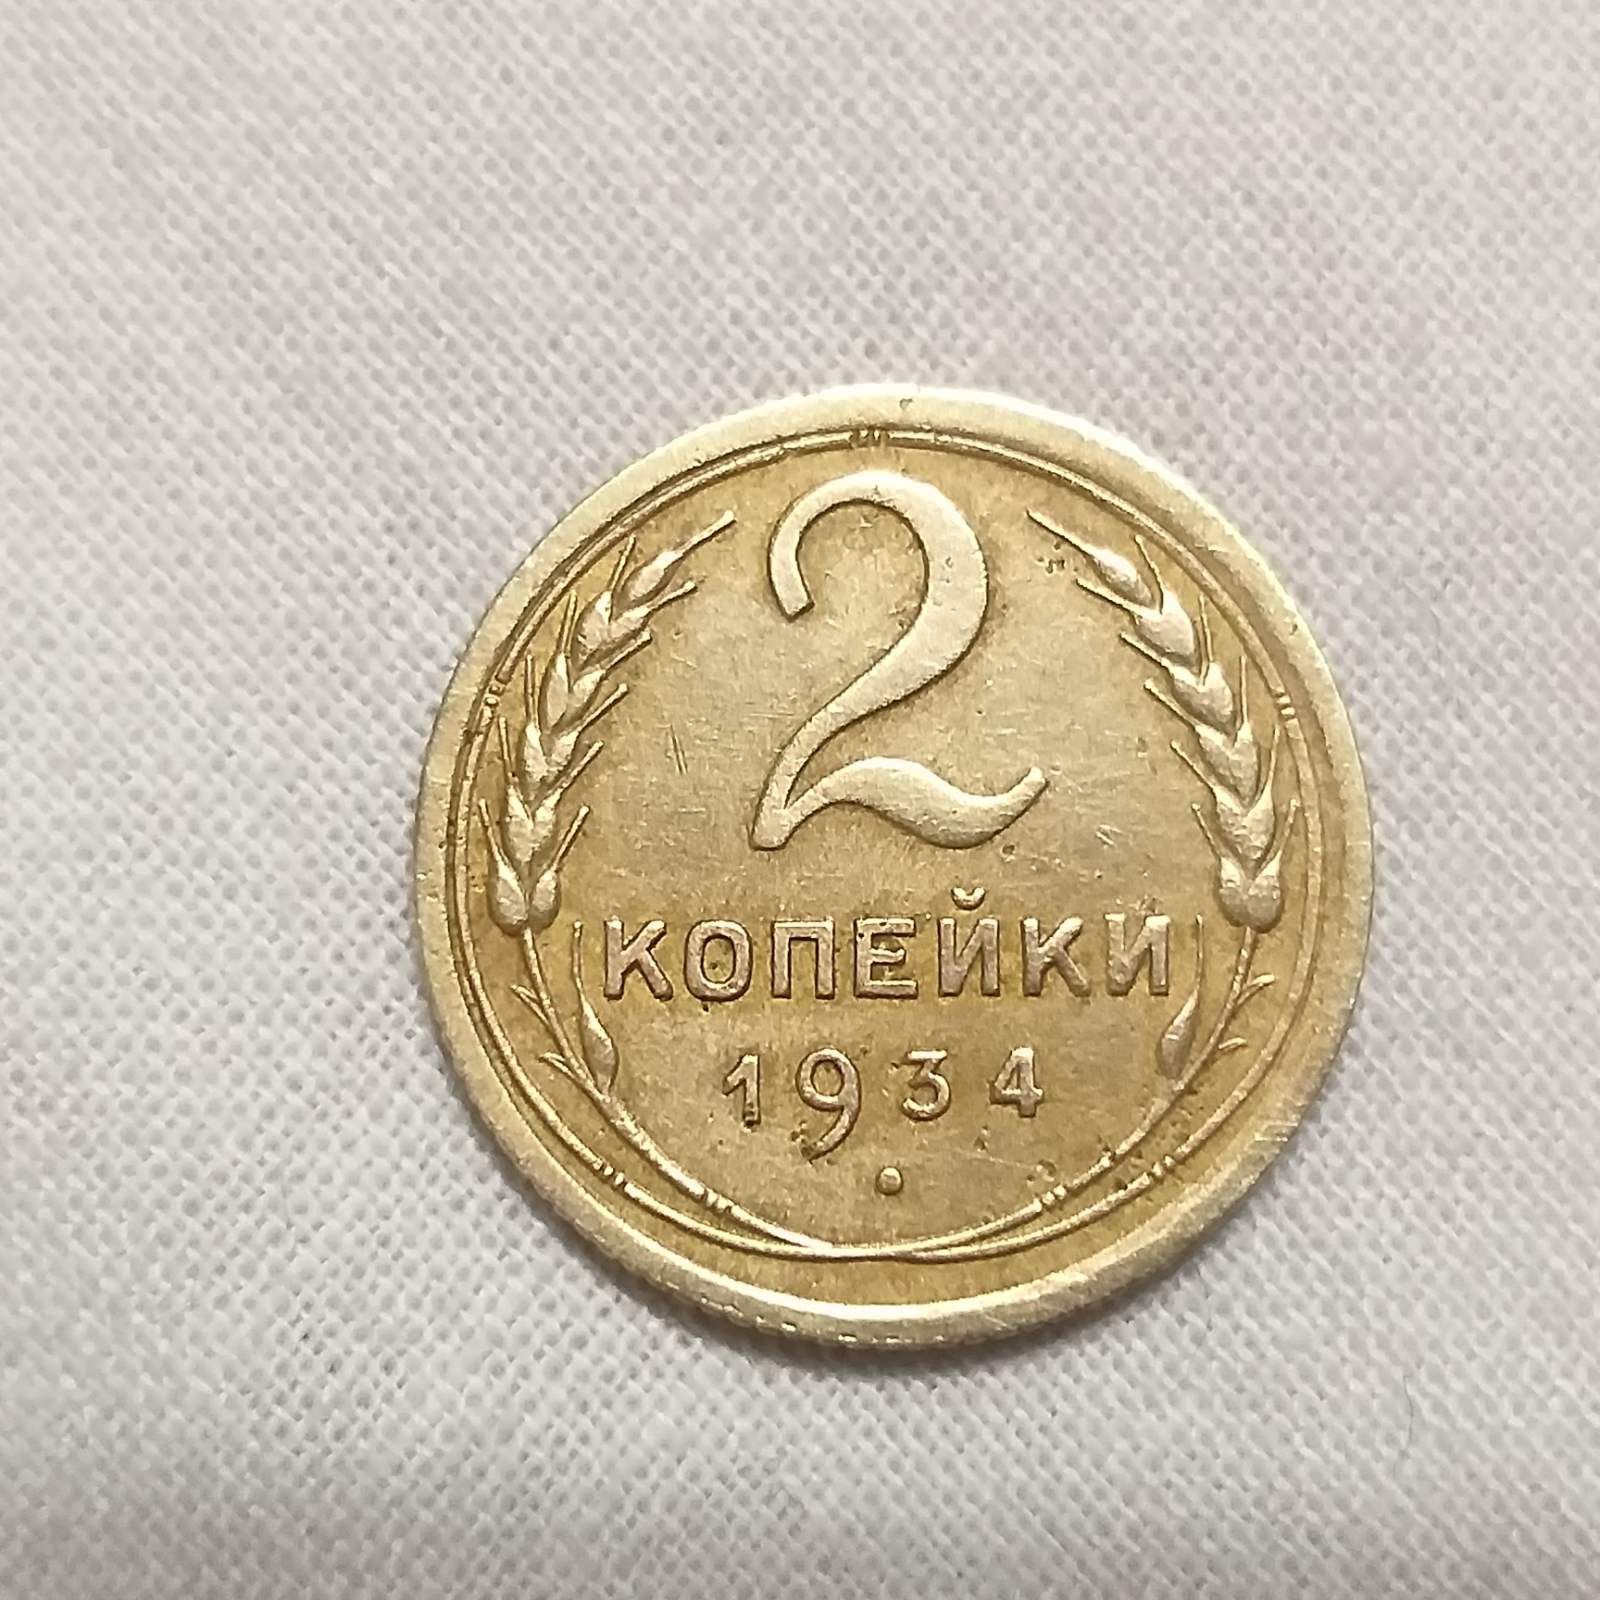 Монета 2 копейки 1934